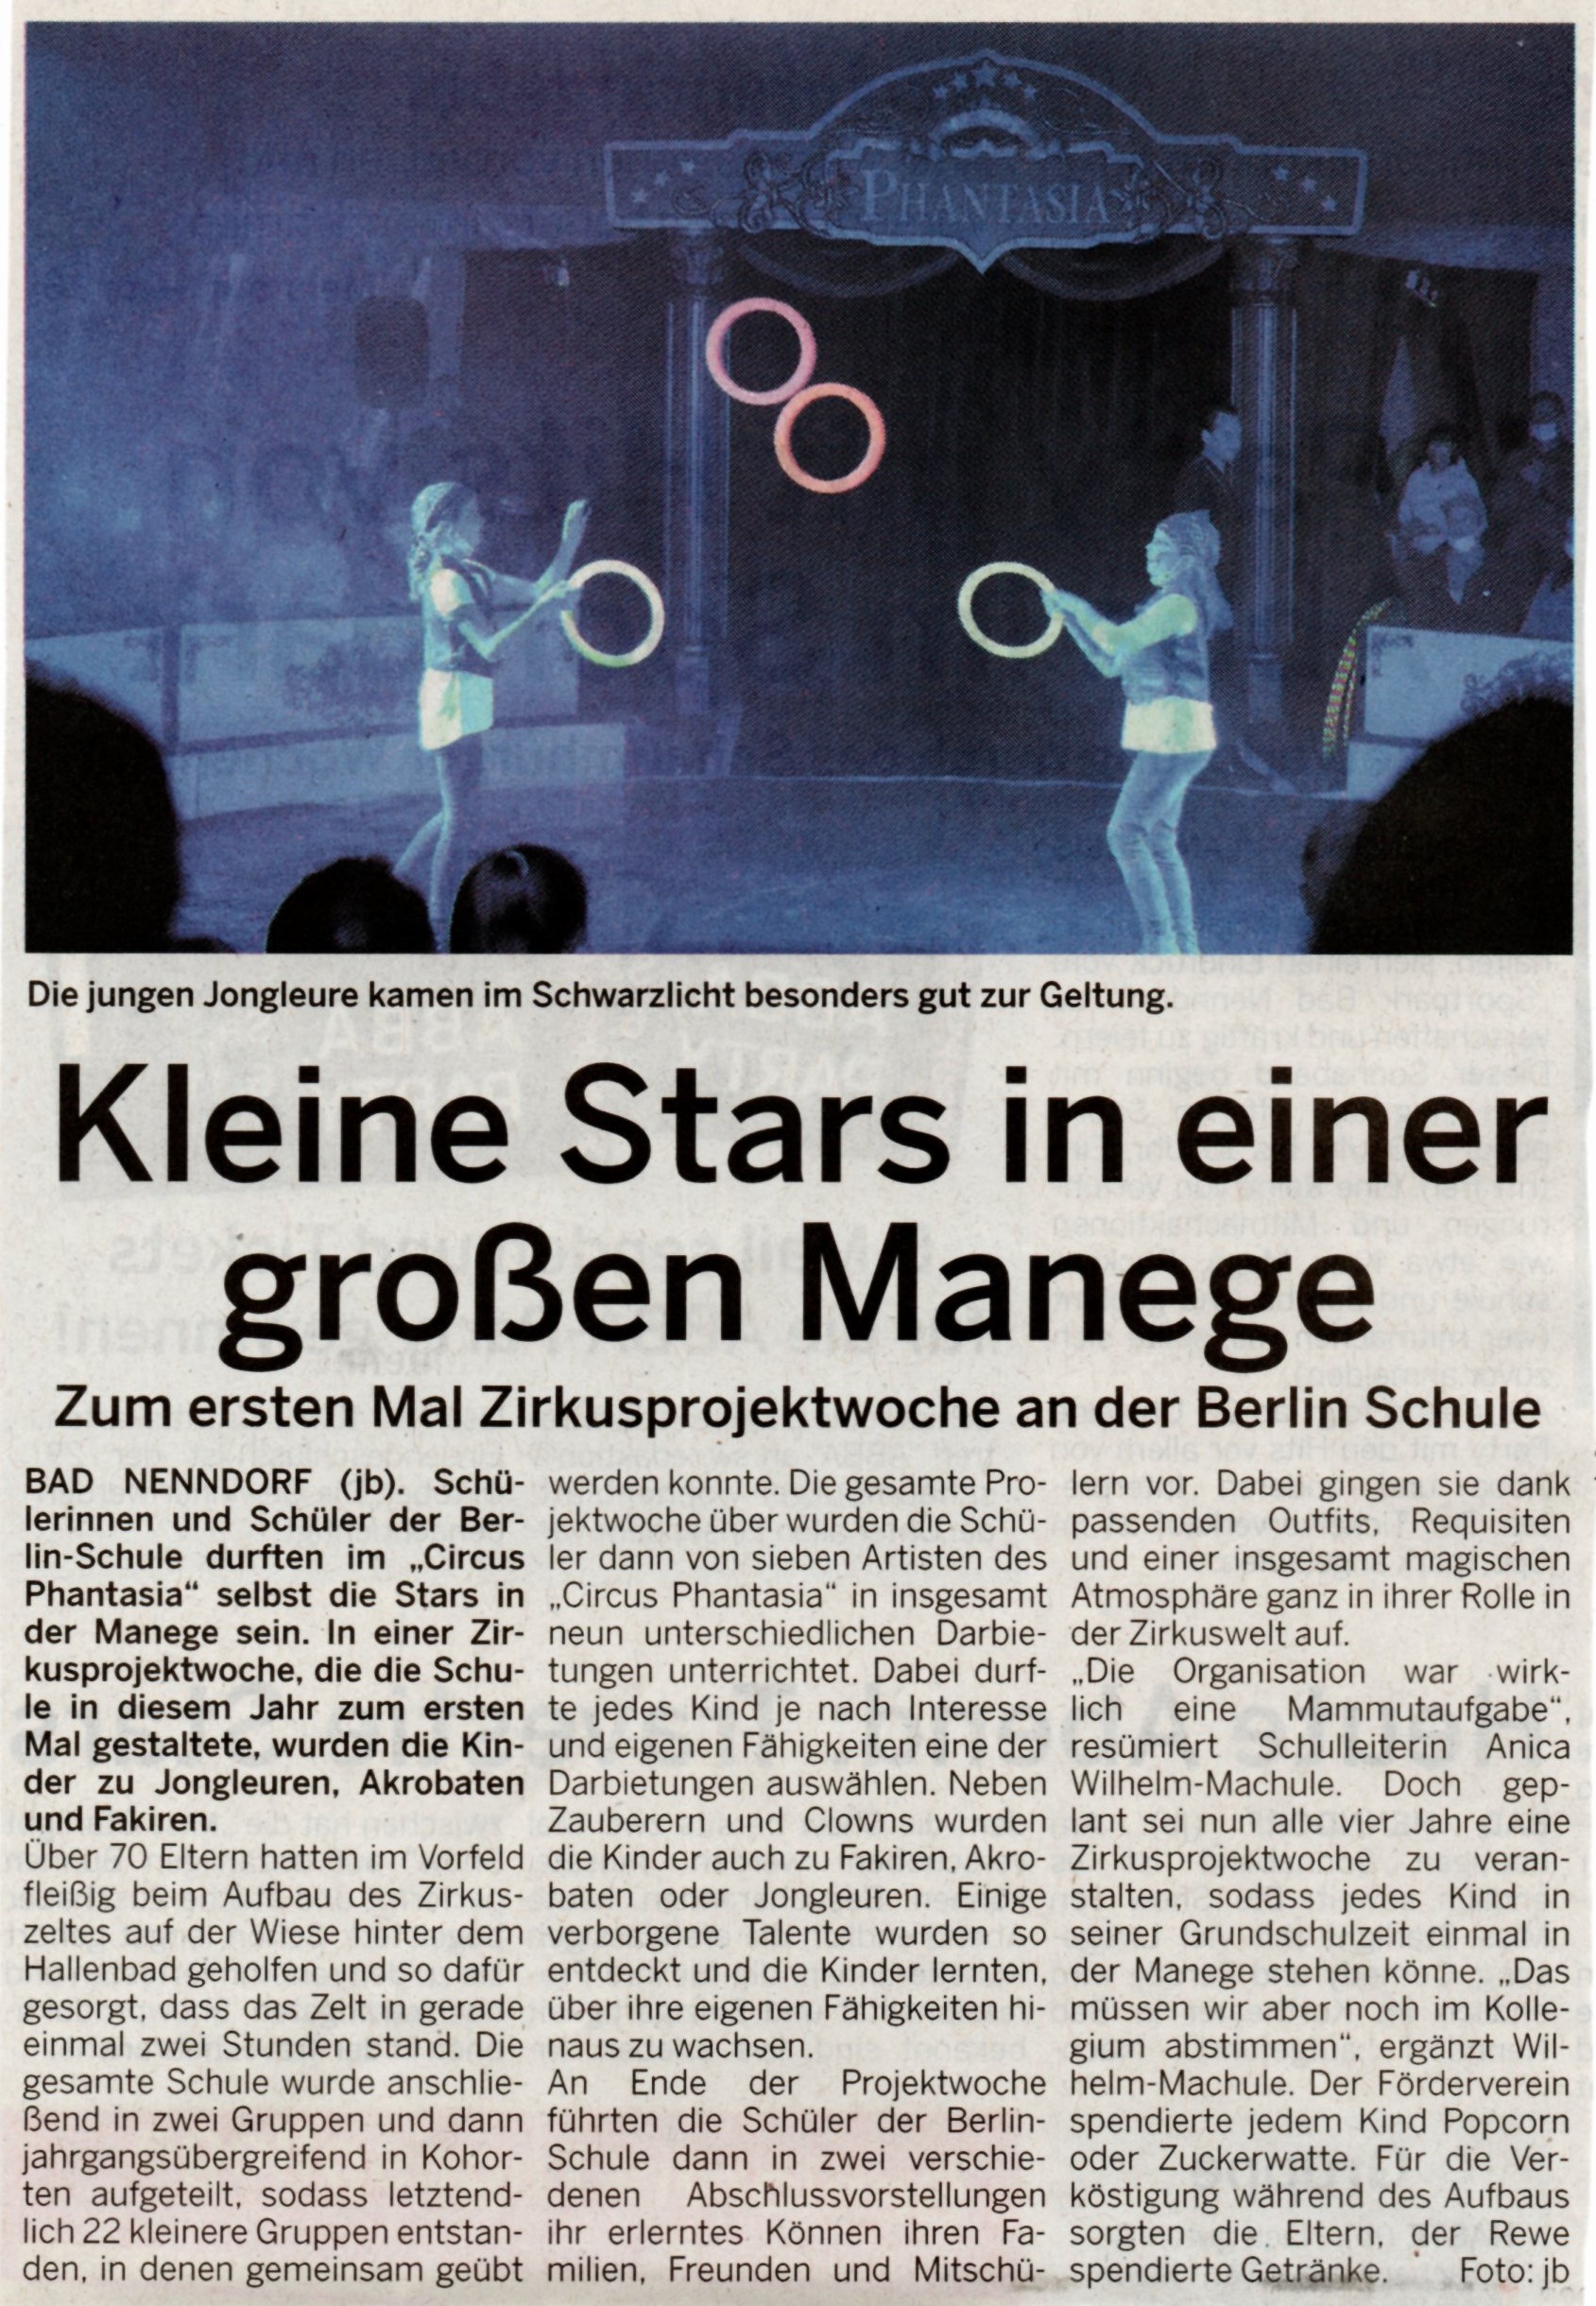 Schaumburger Wochenblatt 23.10.2021